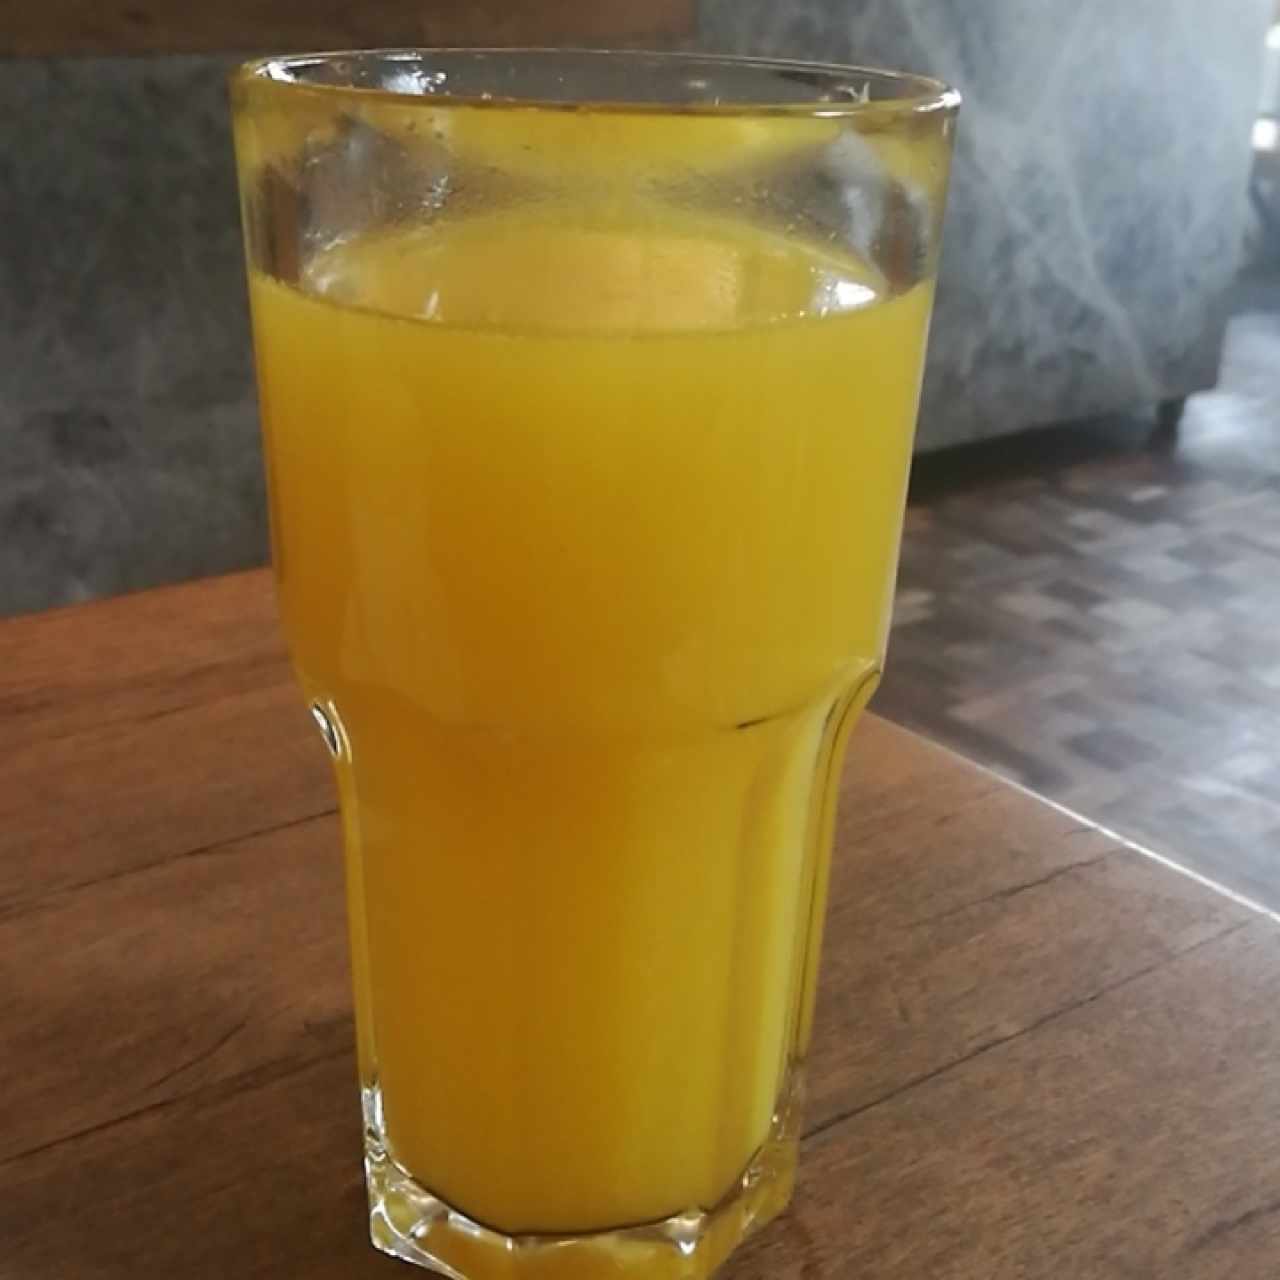 jugo de naranja natural!